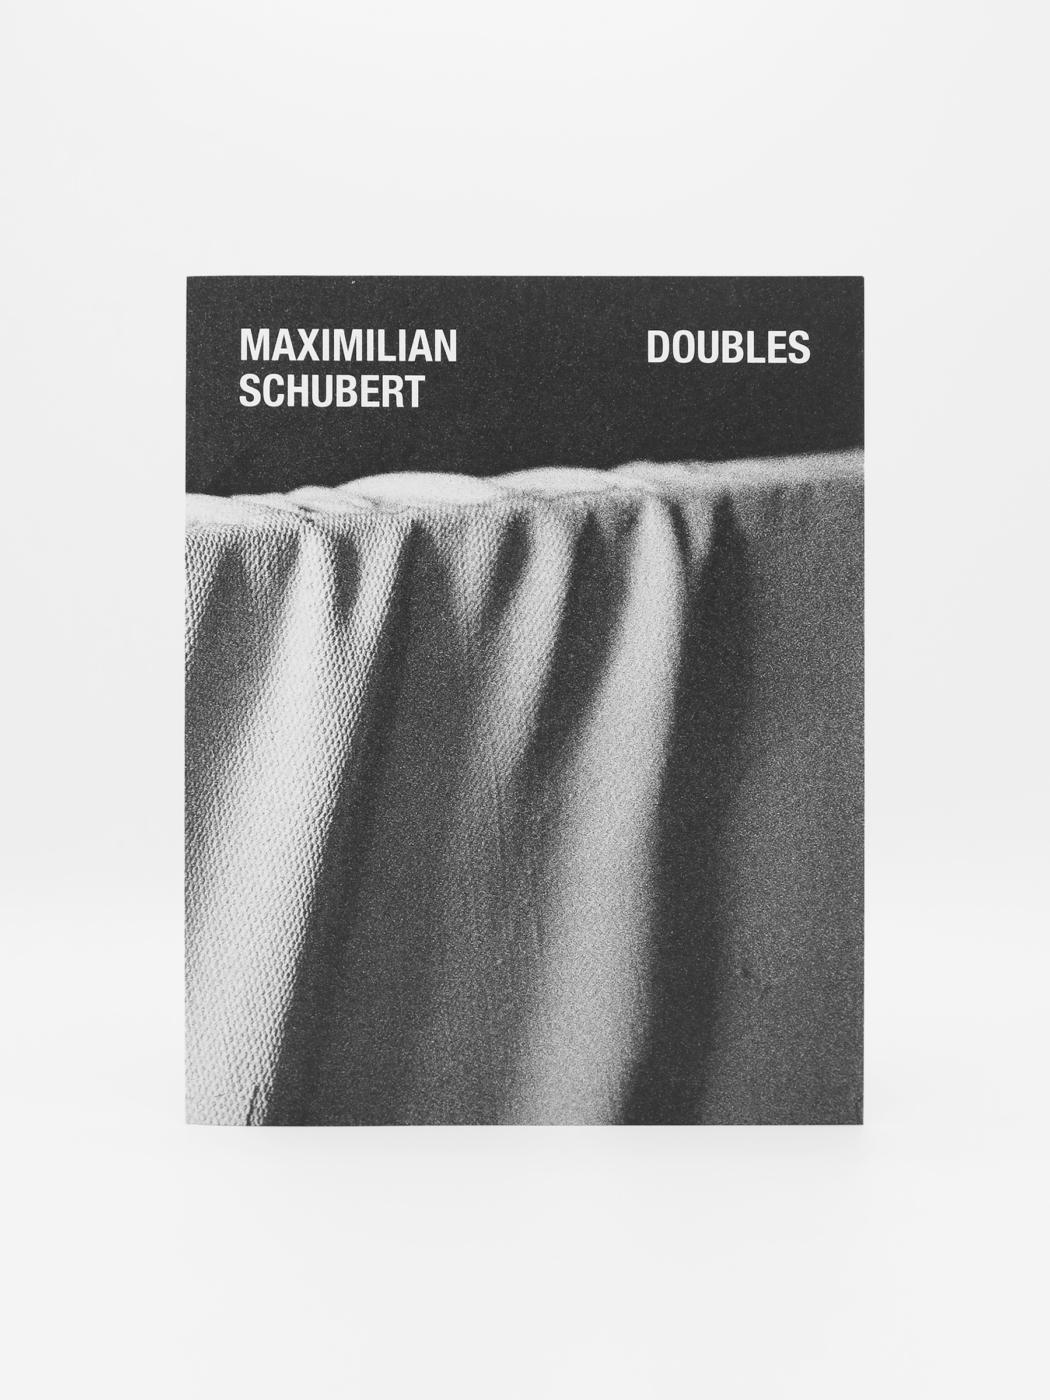 Maximilian Schubert, Doubles